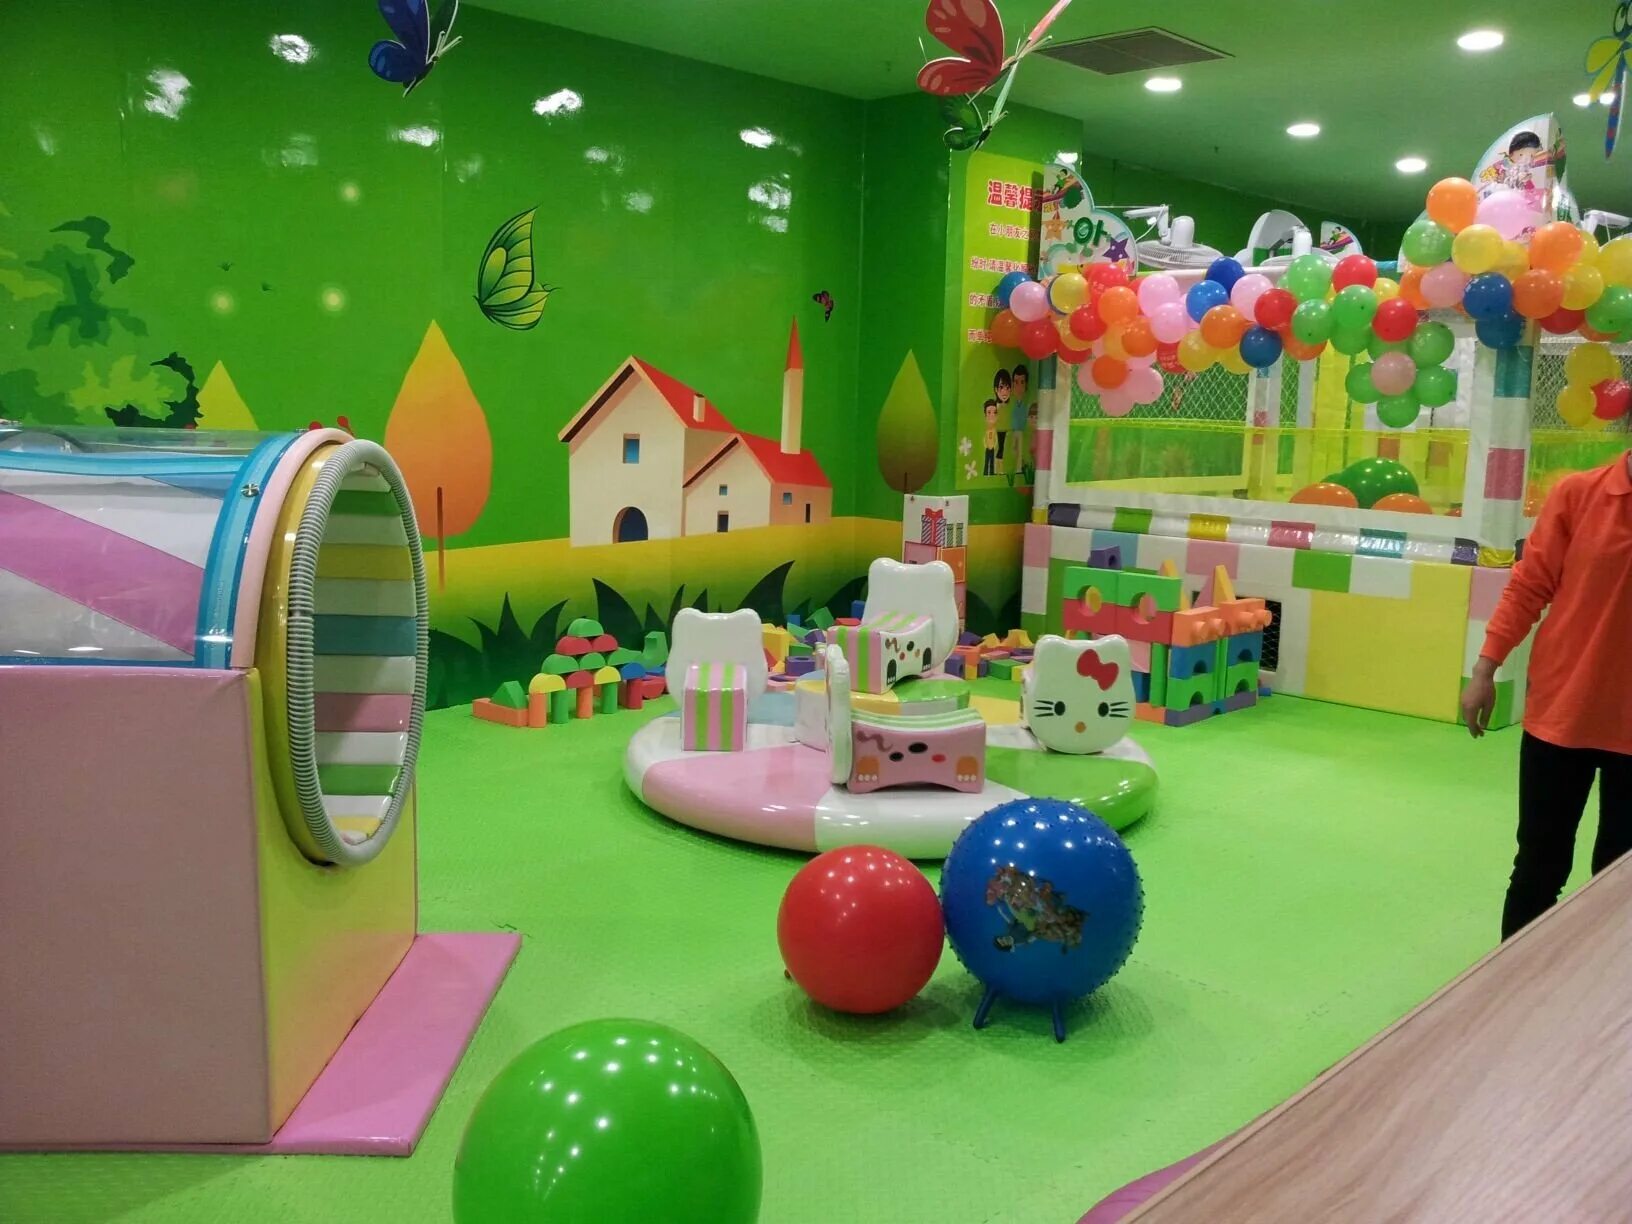 Открой развлечения. Детская игровая комната. Игровая комната для детей. Развлекательная комната для детей. Детская игровая комната для малышей.